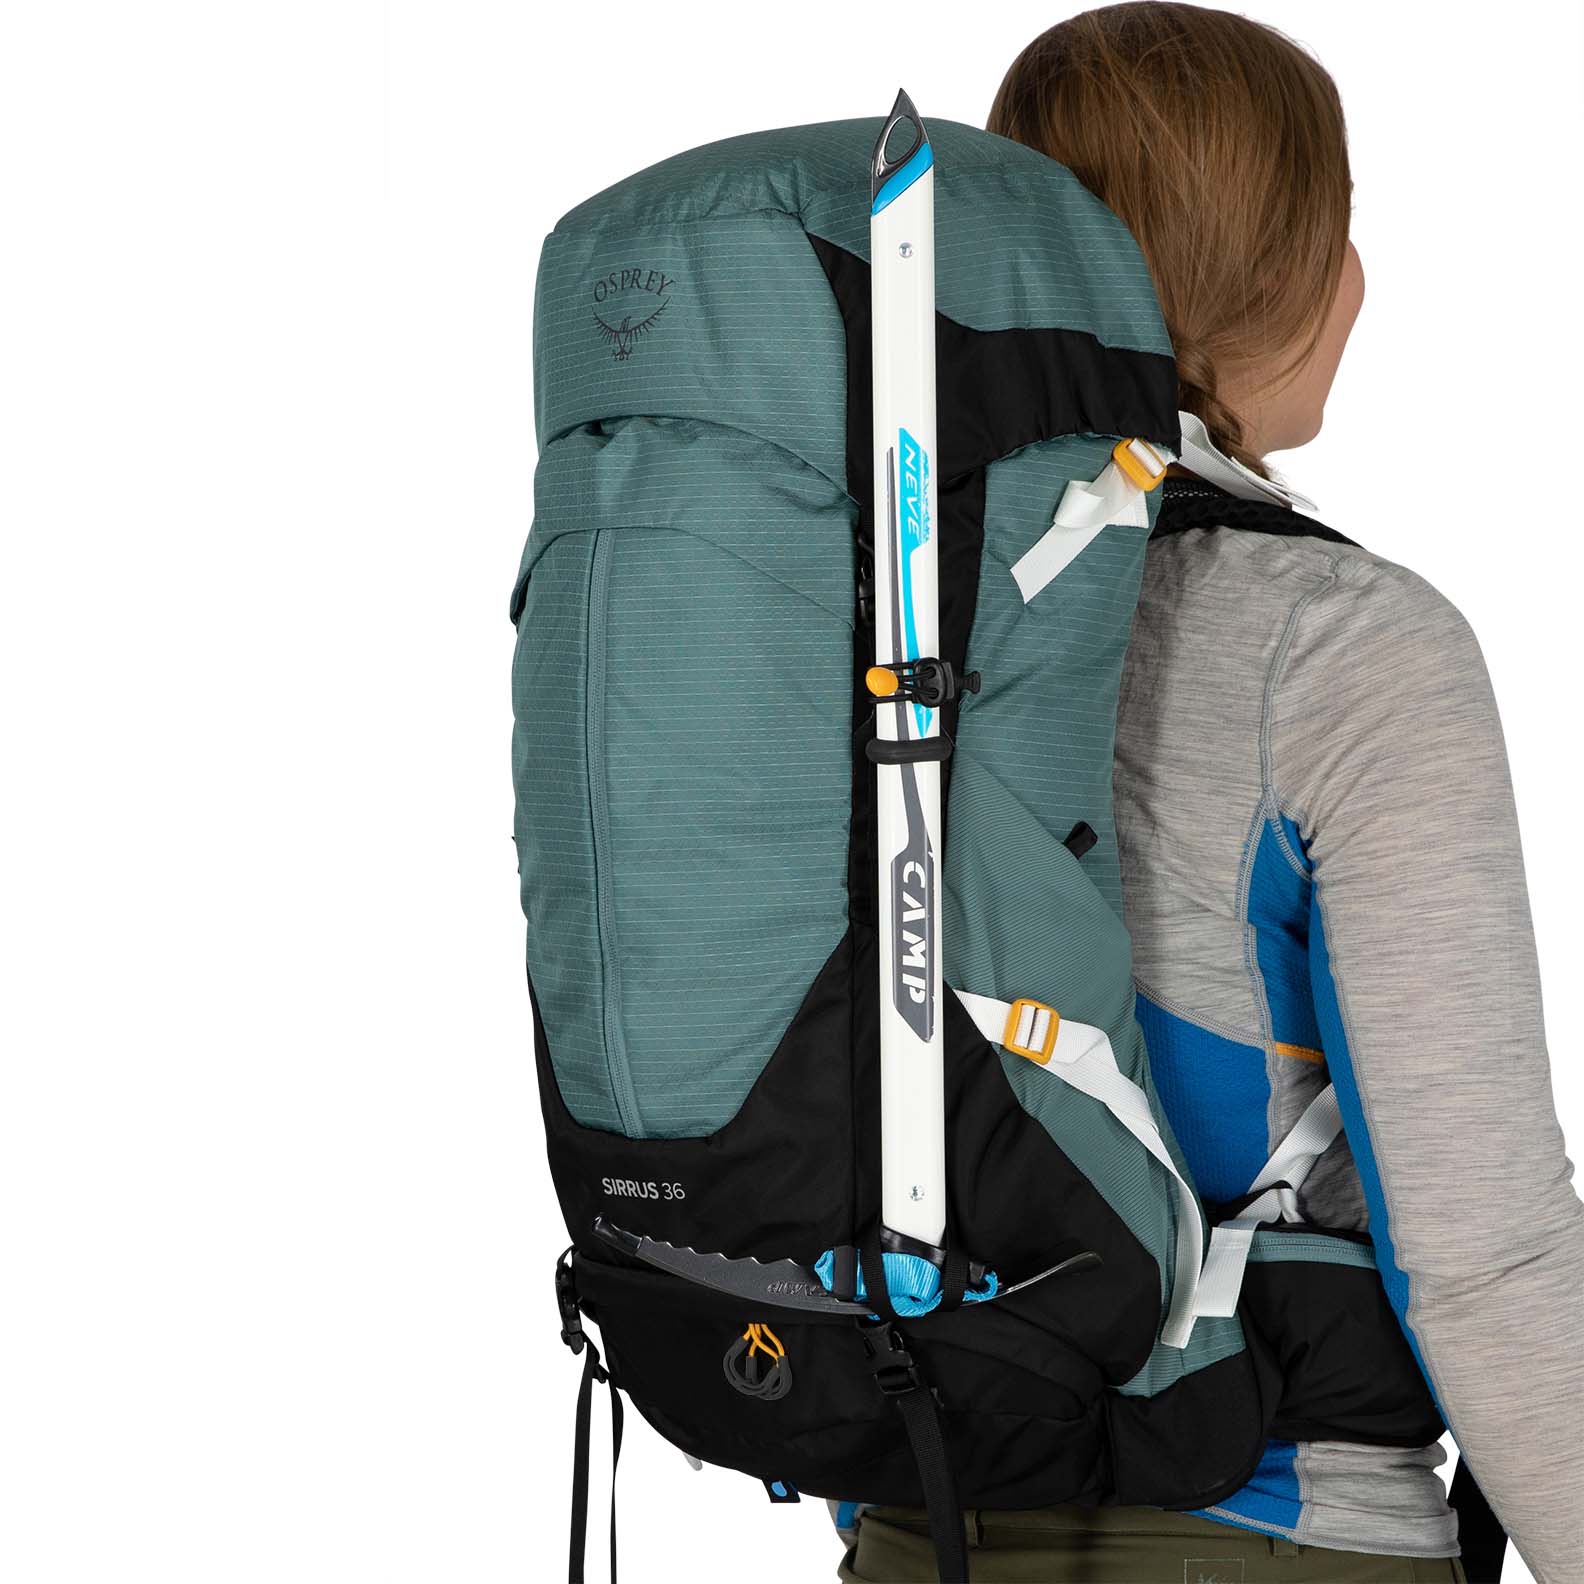 Osprey Sirrus 36 Women's Hiking Backpack